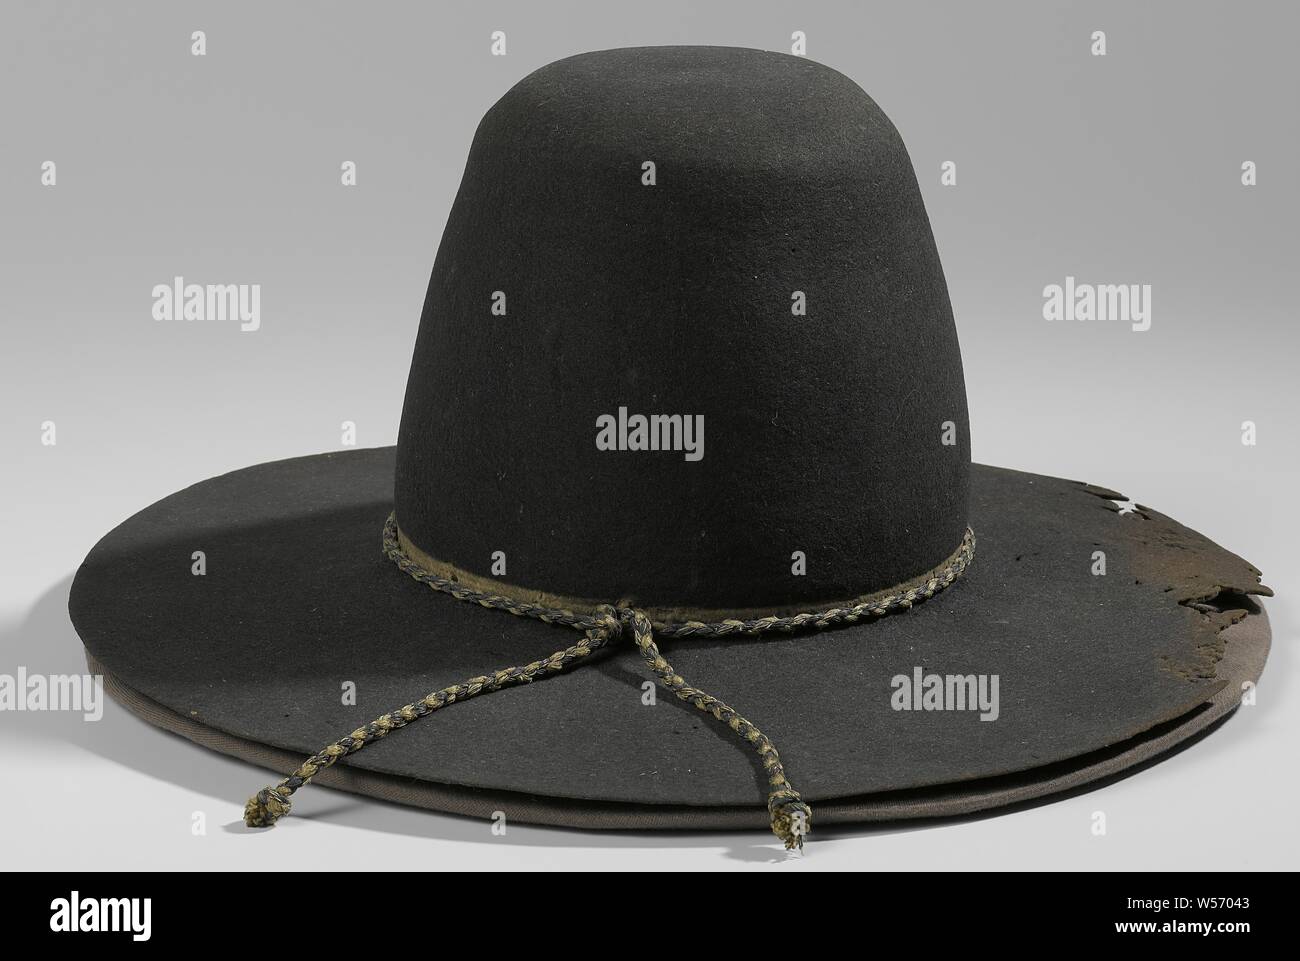 Sombrero de Hendrik Casimir I, sombrero fieltro negro, con ala cable trenzado de hilo de plata blanco-azul. De Hendrik Casimir I, conde de Nassau-Dietz, caído en Hulst 1640., Hendrik Casimir